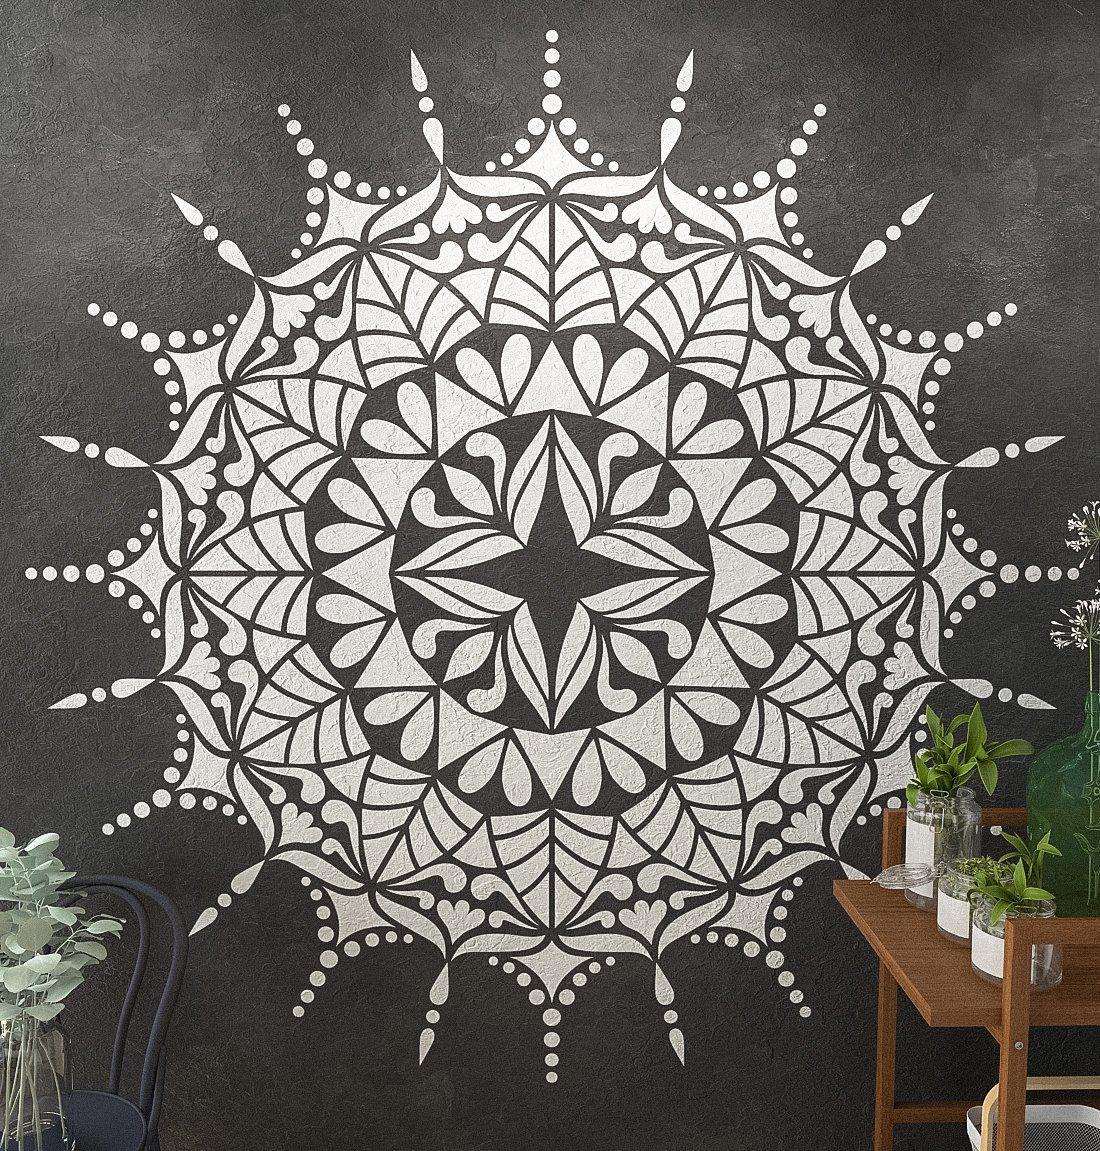 Mandala Floor Stencil- Original Mandala Design- Large Mandala Wall Stencil 88